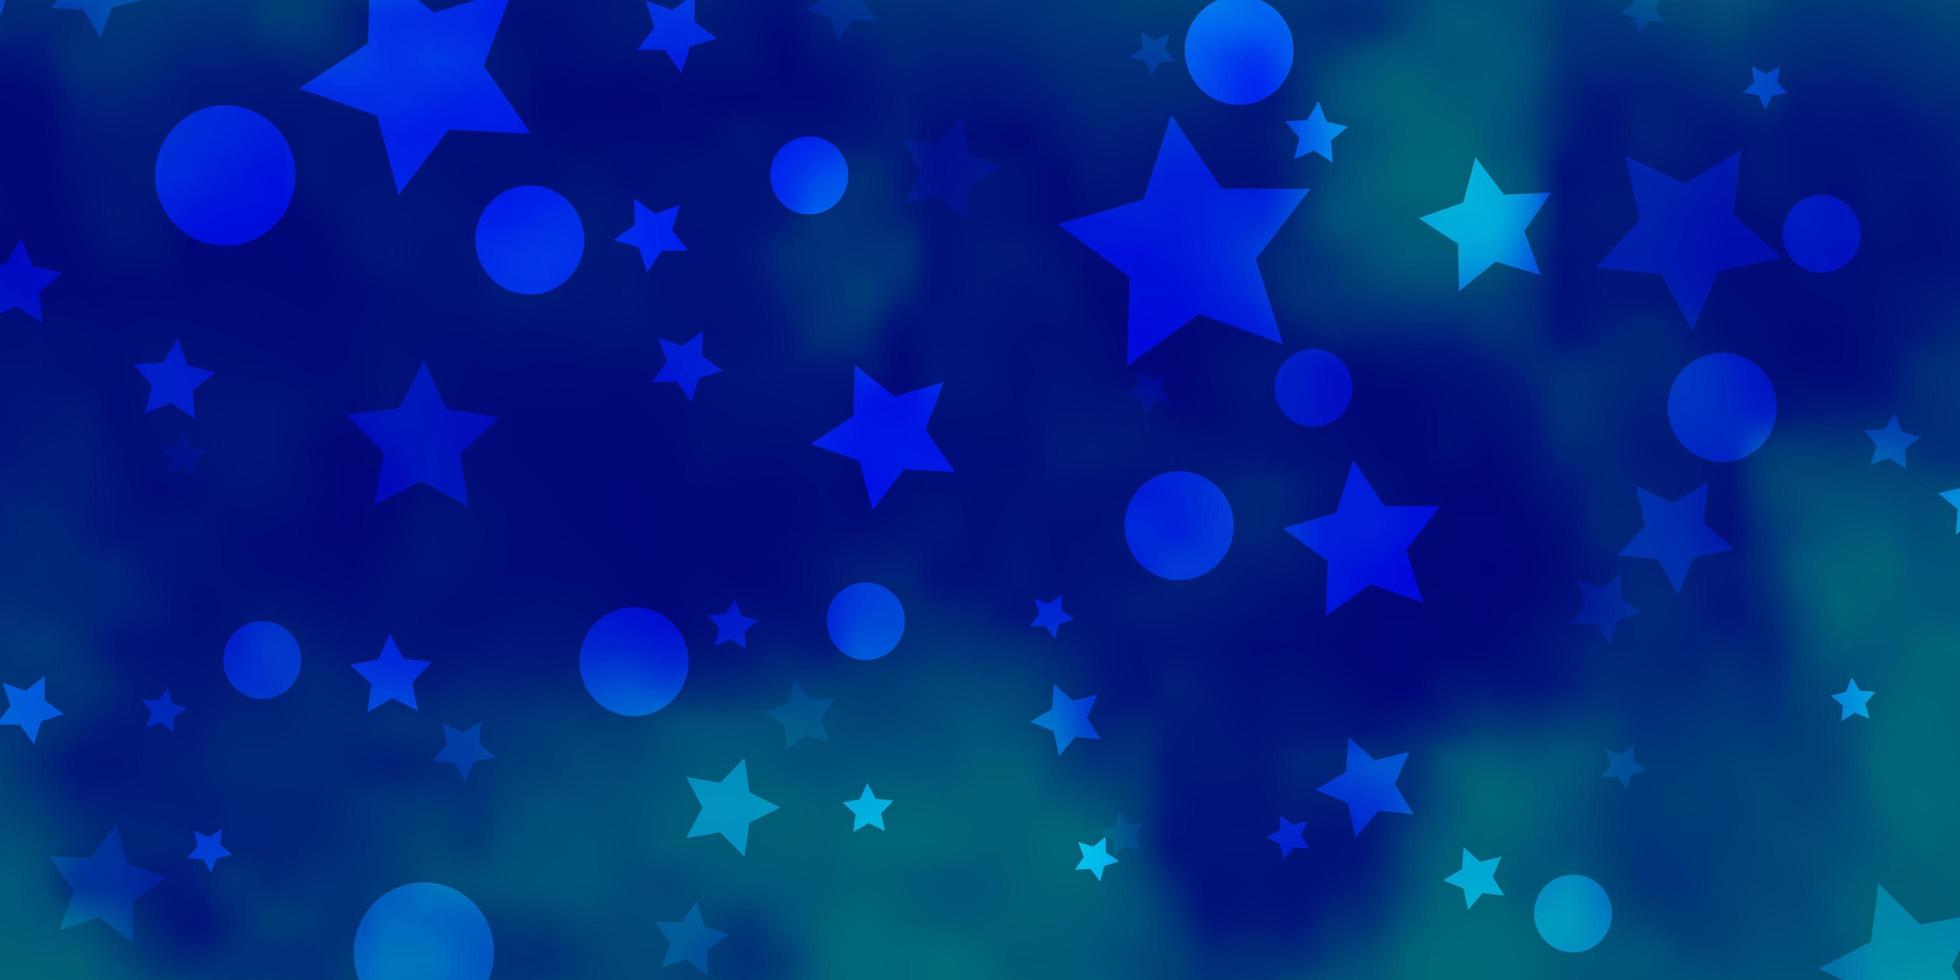 hellblauer Vektorhintergrund mit Kreisen, Sternen. bunte scheiben, sterne auf einfachem farbverlaufshintergrund. Design für Tapeten, Stoffhersteller. vektor